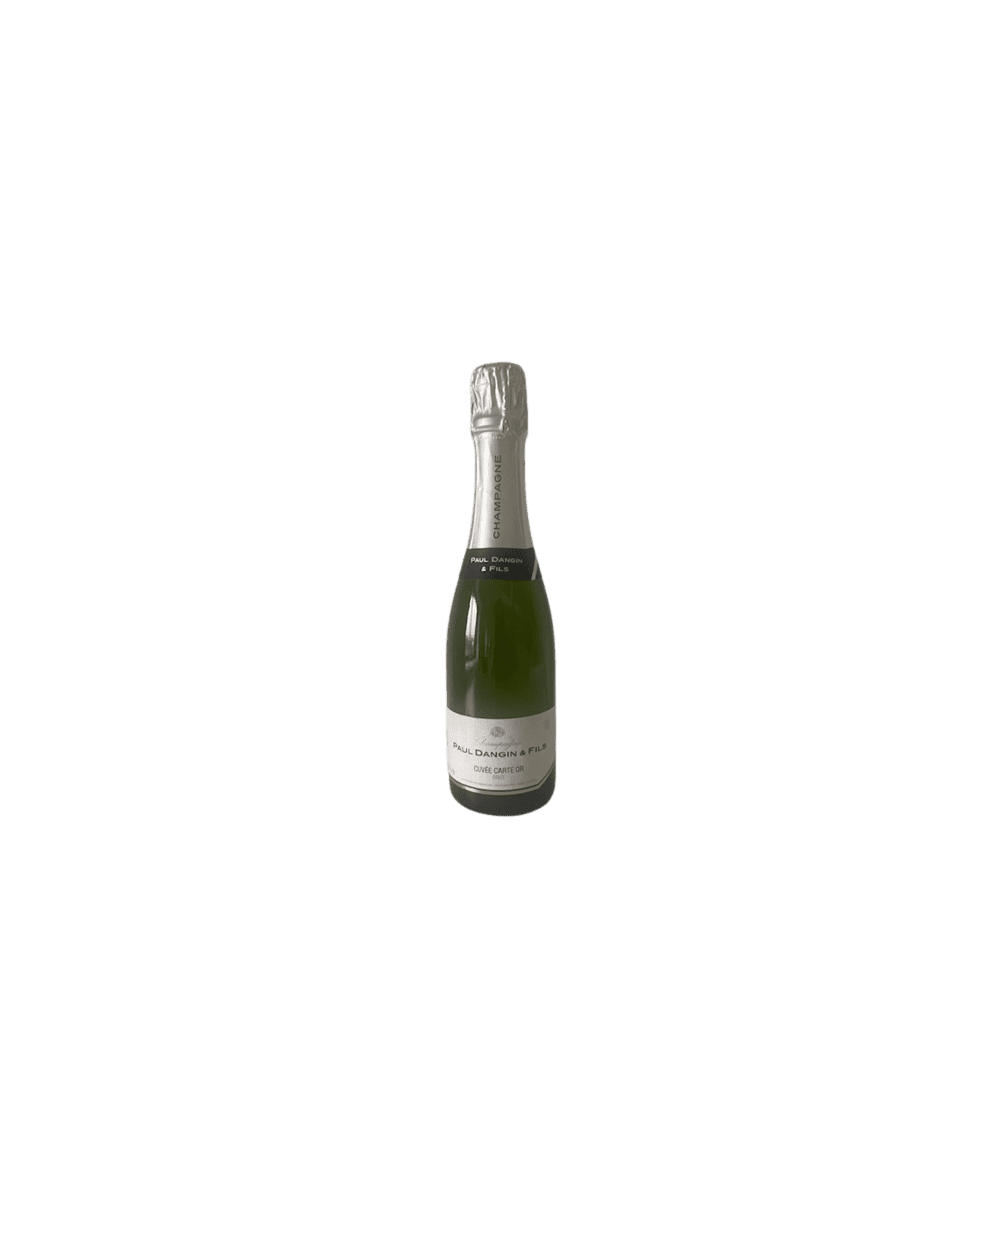 Champagne Brut Dangin et fils cuvée carte d'or 37.5 cl